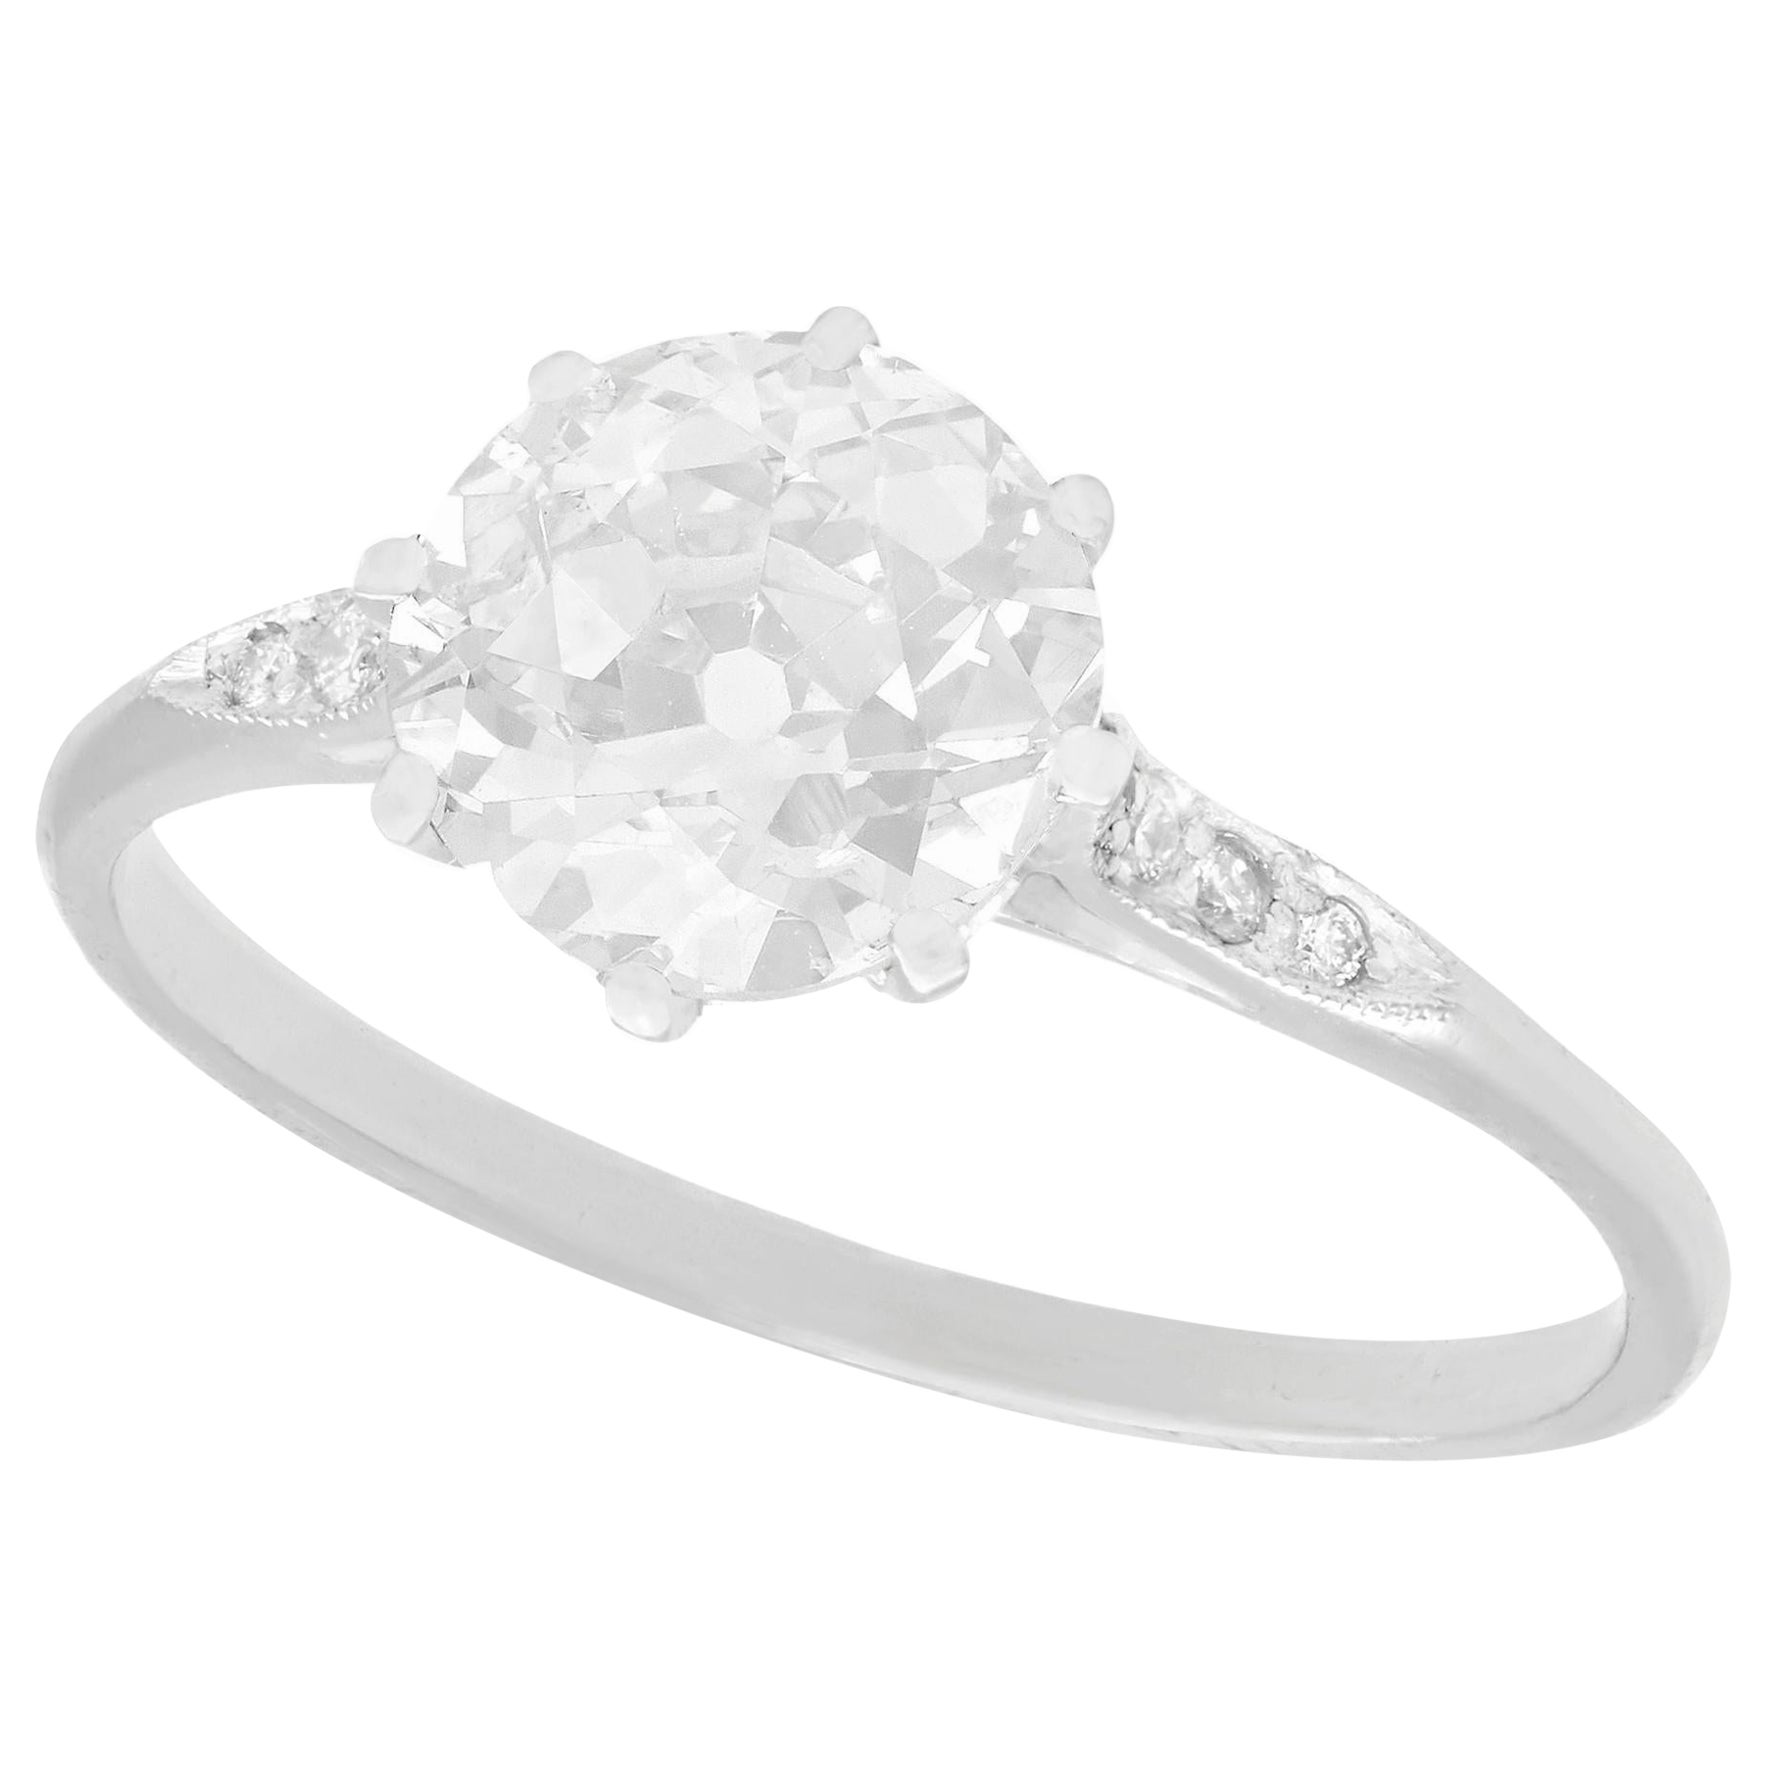 1.55 Carat Diamond and Platinum Solitaire Engagement Ring